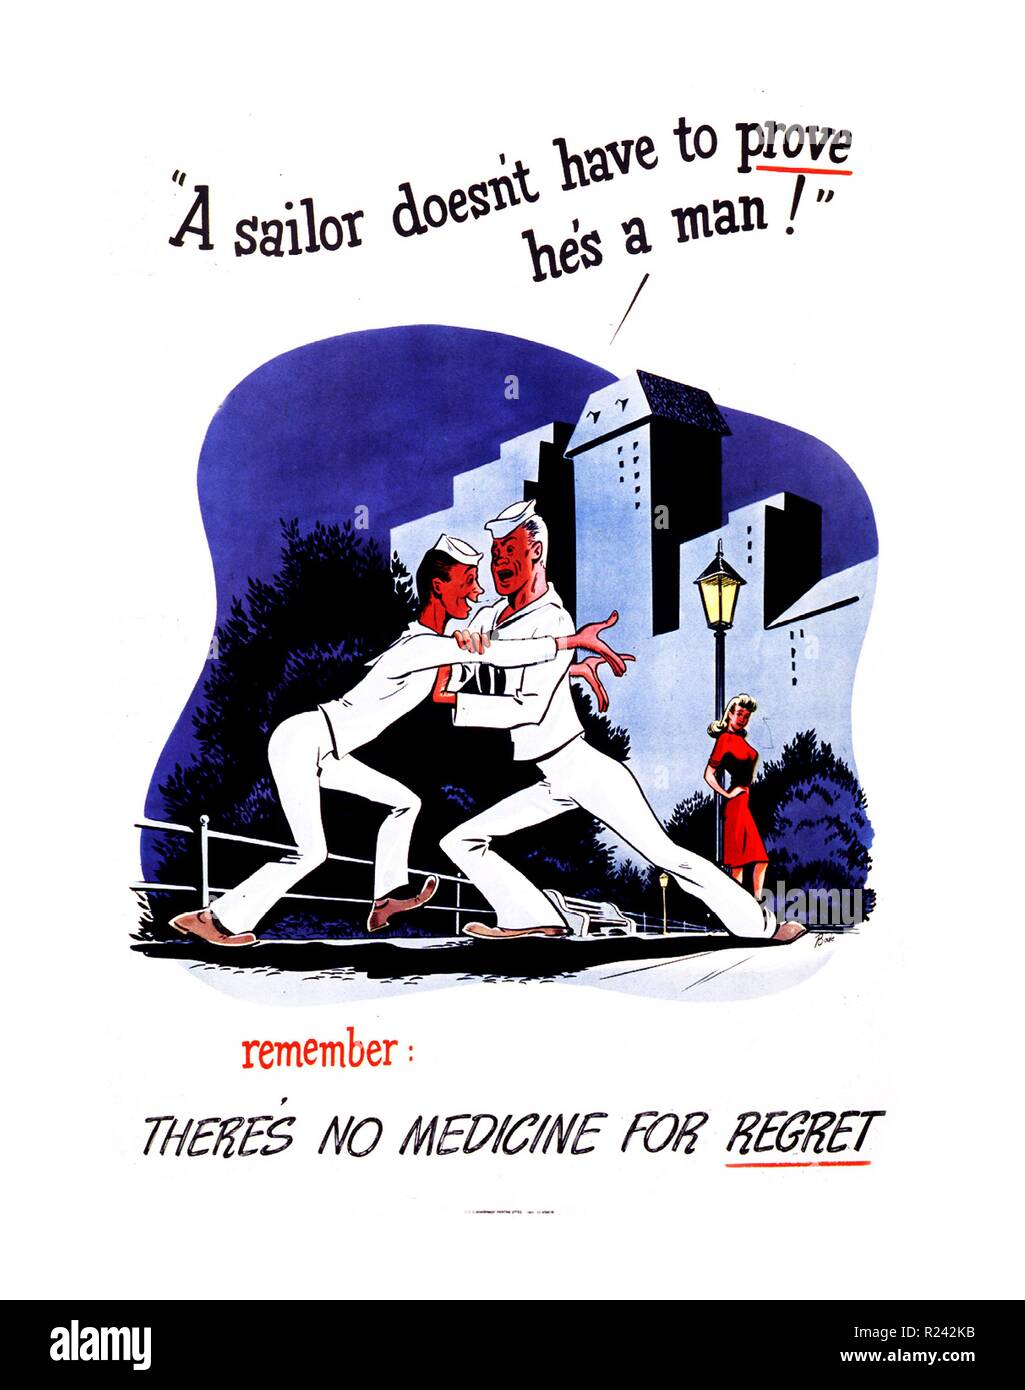 Un marinero no tiene que demostrar que es un hombre! 1942 La segunda guerra mundial, salud pública americana póster para sensibilizar las enfermedades venéreas Foto de stock